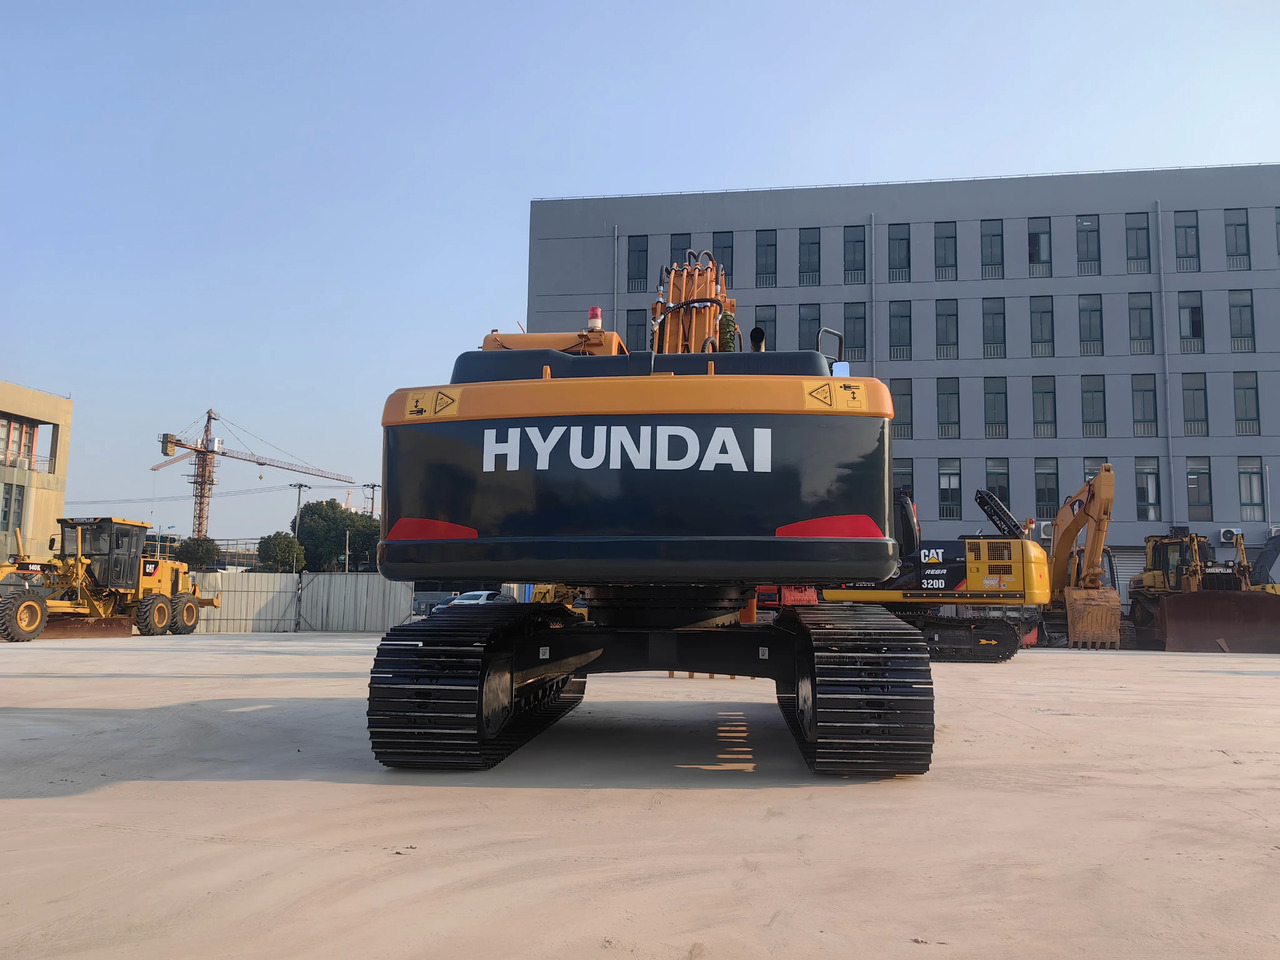 Гусеничный экскаватор good condition Hyundai 220LC-9S used excavators 220LC-9S 210W-7 wheel excavators for sale: фото 6